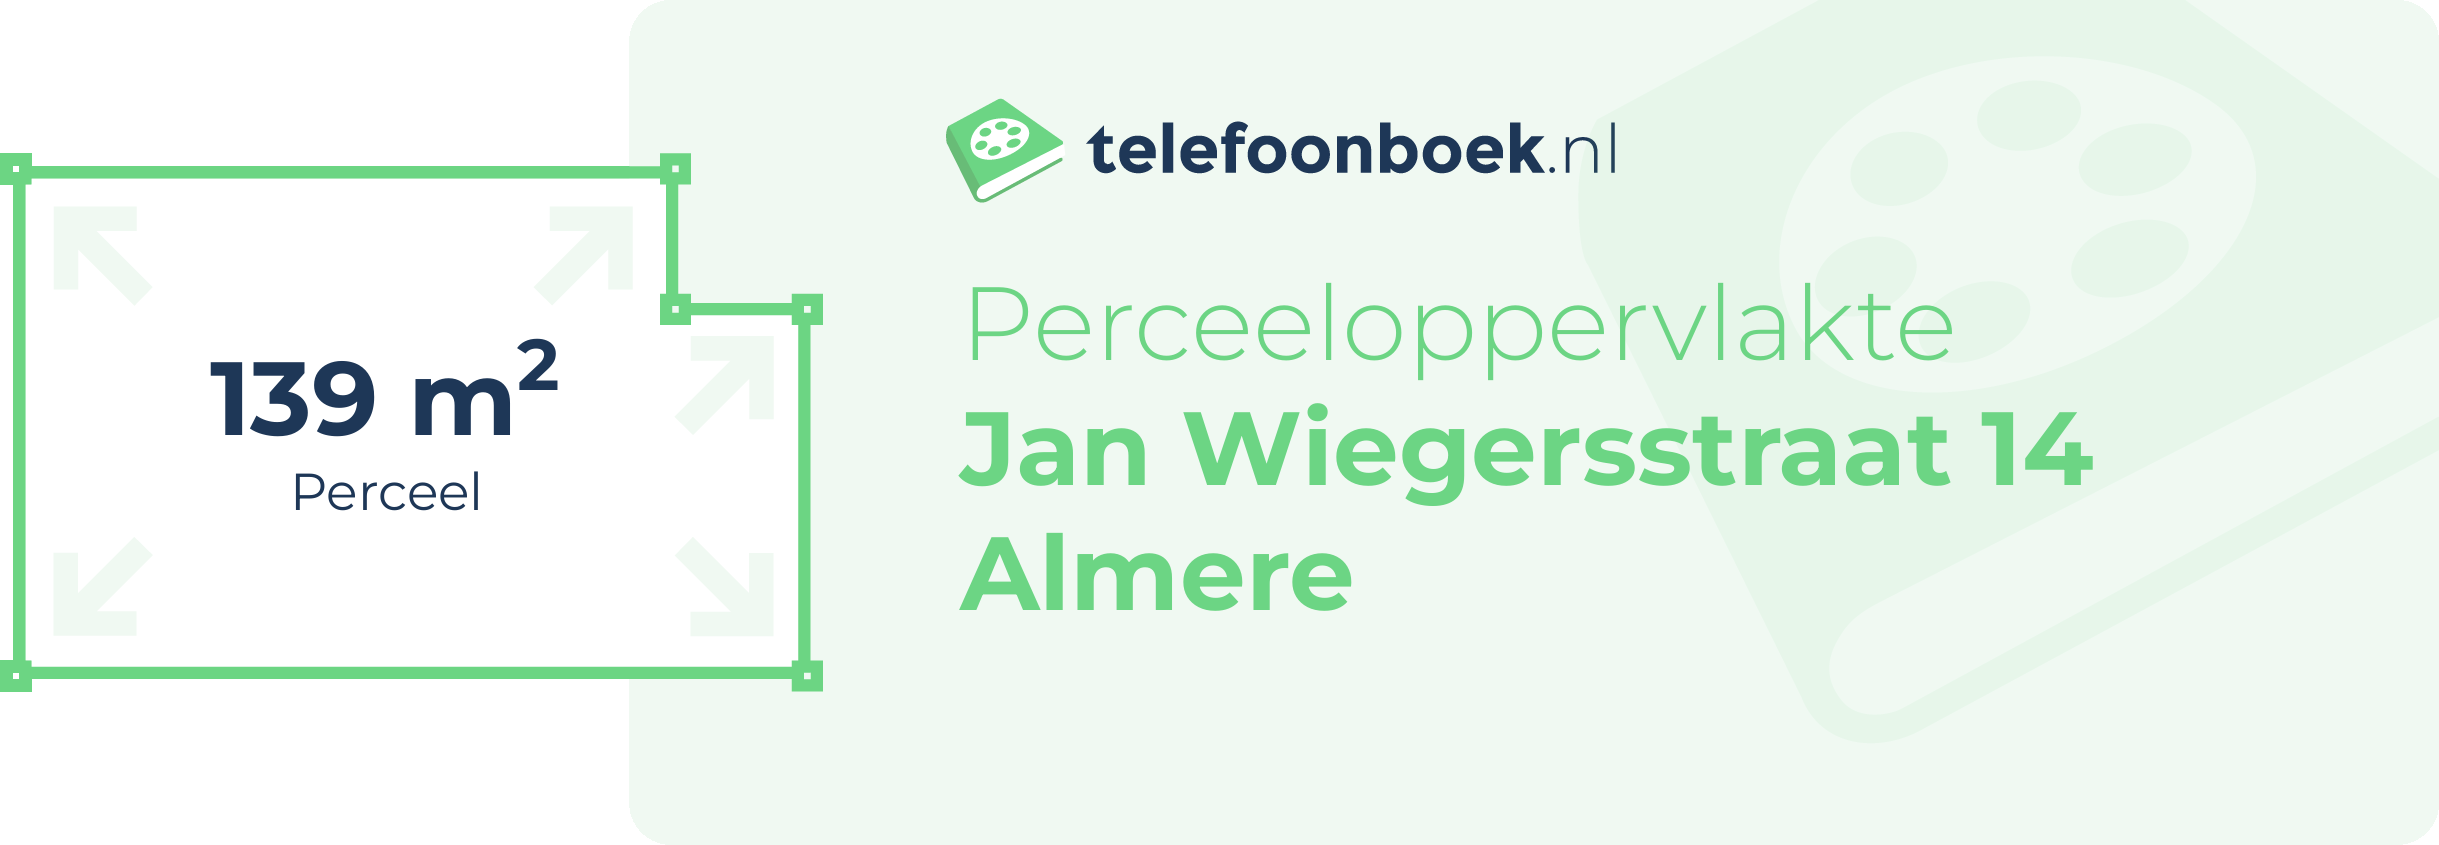 Perceeloppervlakte Jan Wiegersstraat 14 Almere